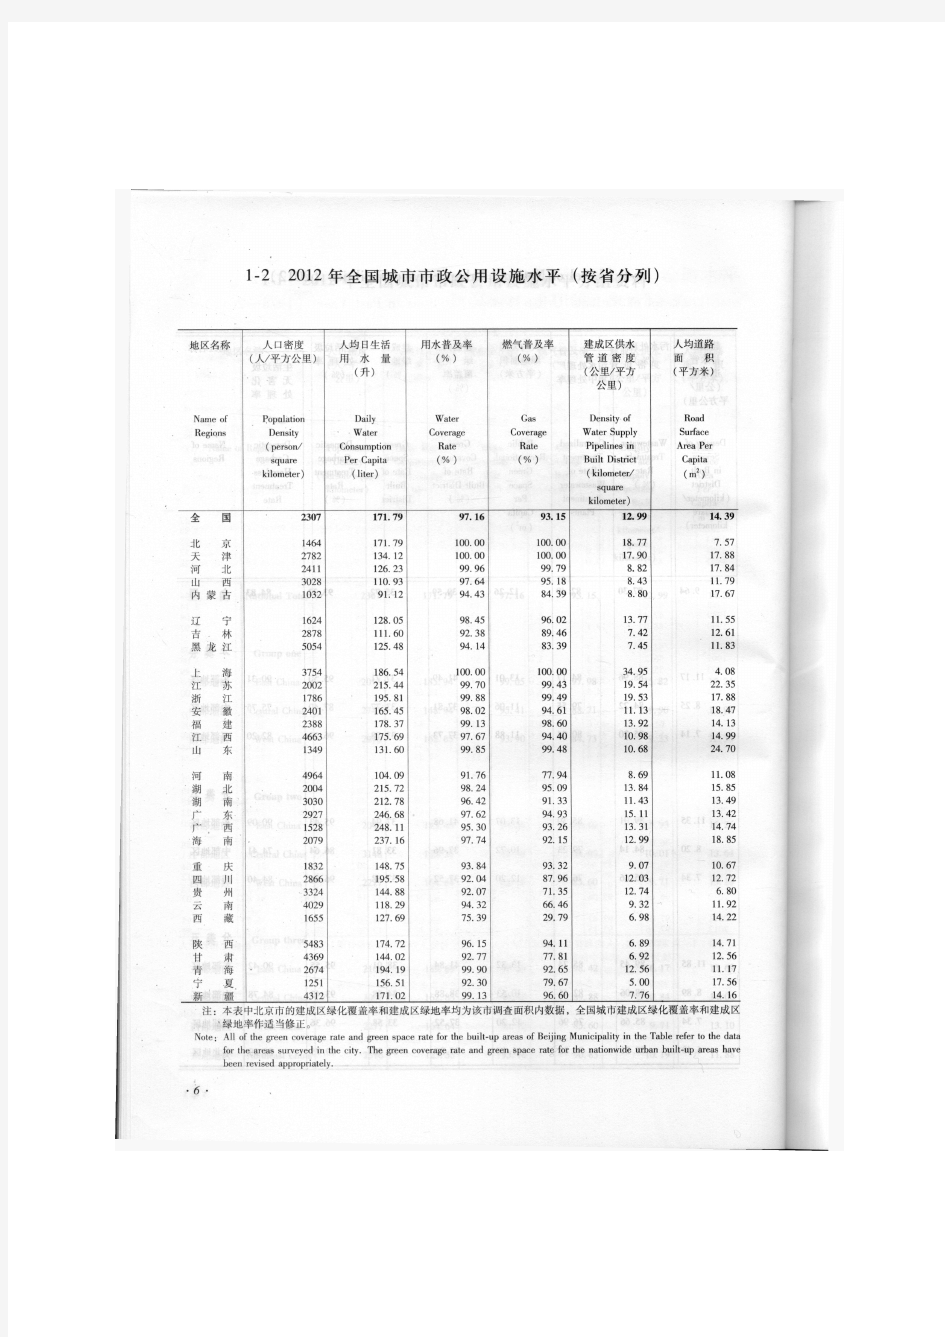 2012年中国城市建设统计年鉴-全国城市市政公用设施水平(按省分列)